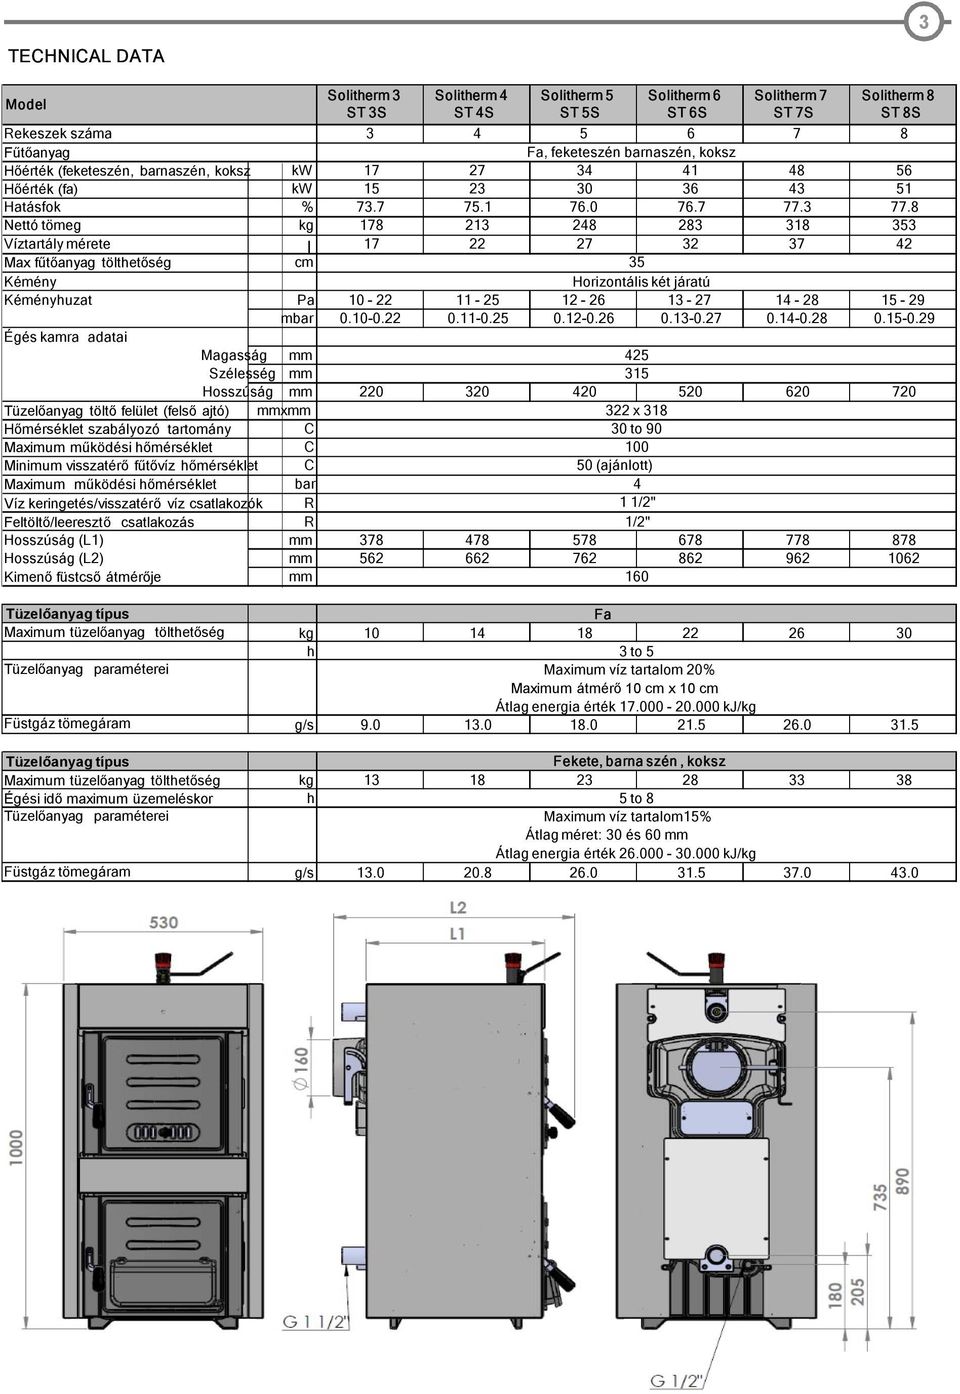 Használati, szerelési és beüzemelési útmutató a. Solitherm S. típusú öntöttvas  kazán ST 3,4,5,6,7 és ST8 as modelljeihez - PDF Ingyenes letöltés